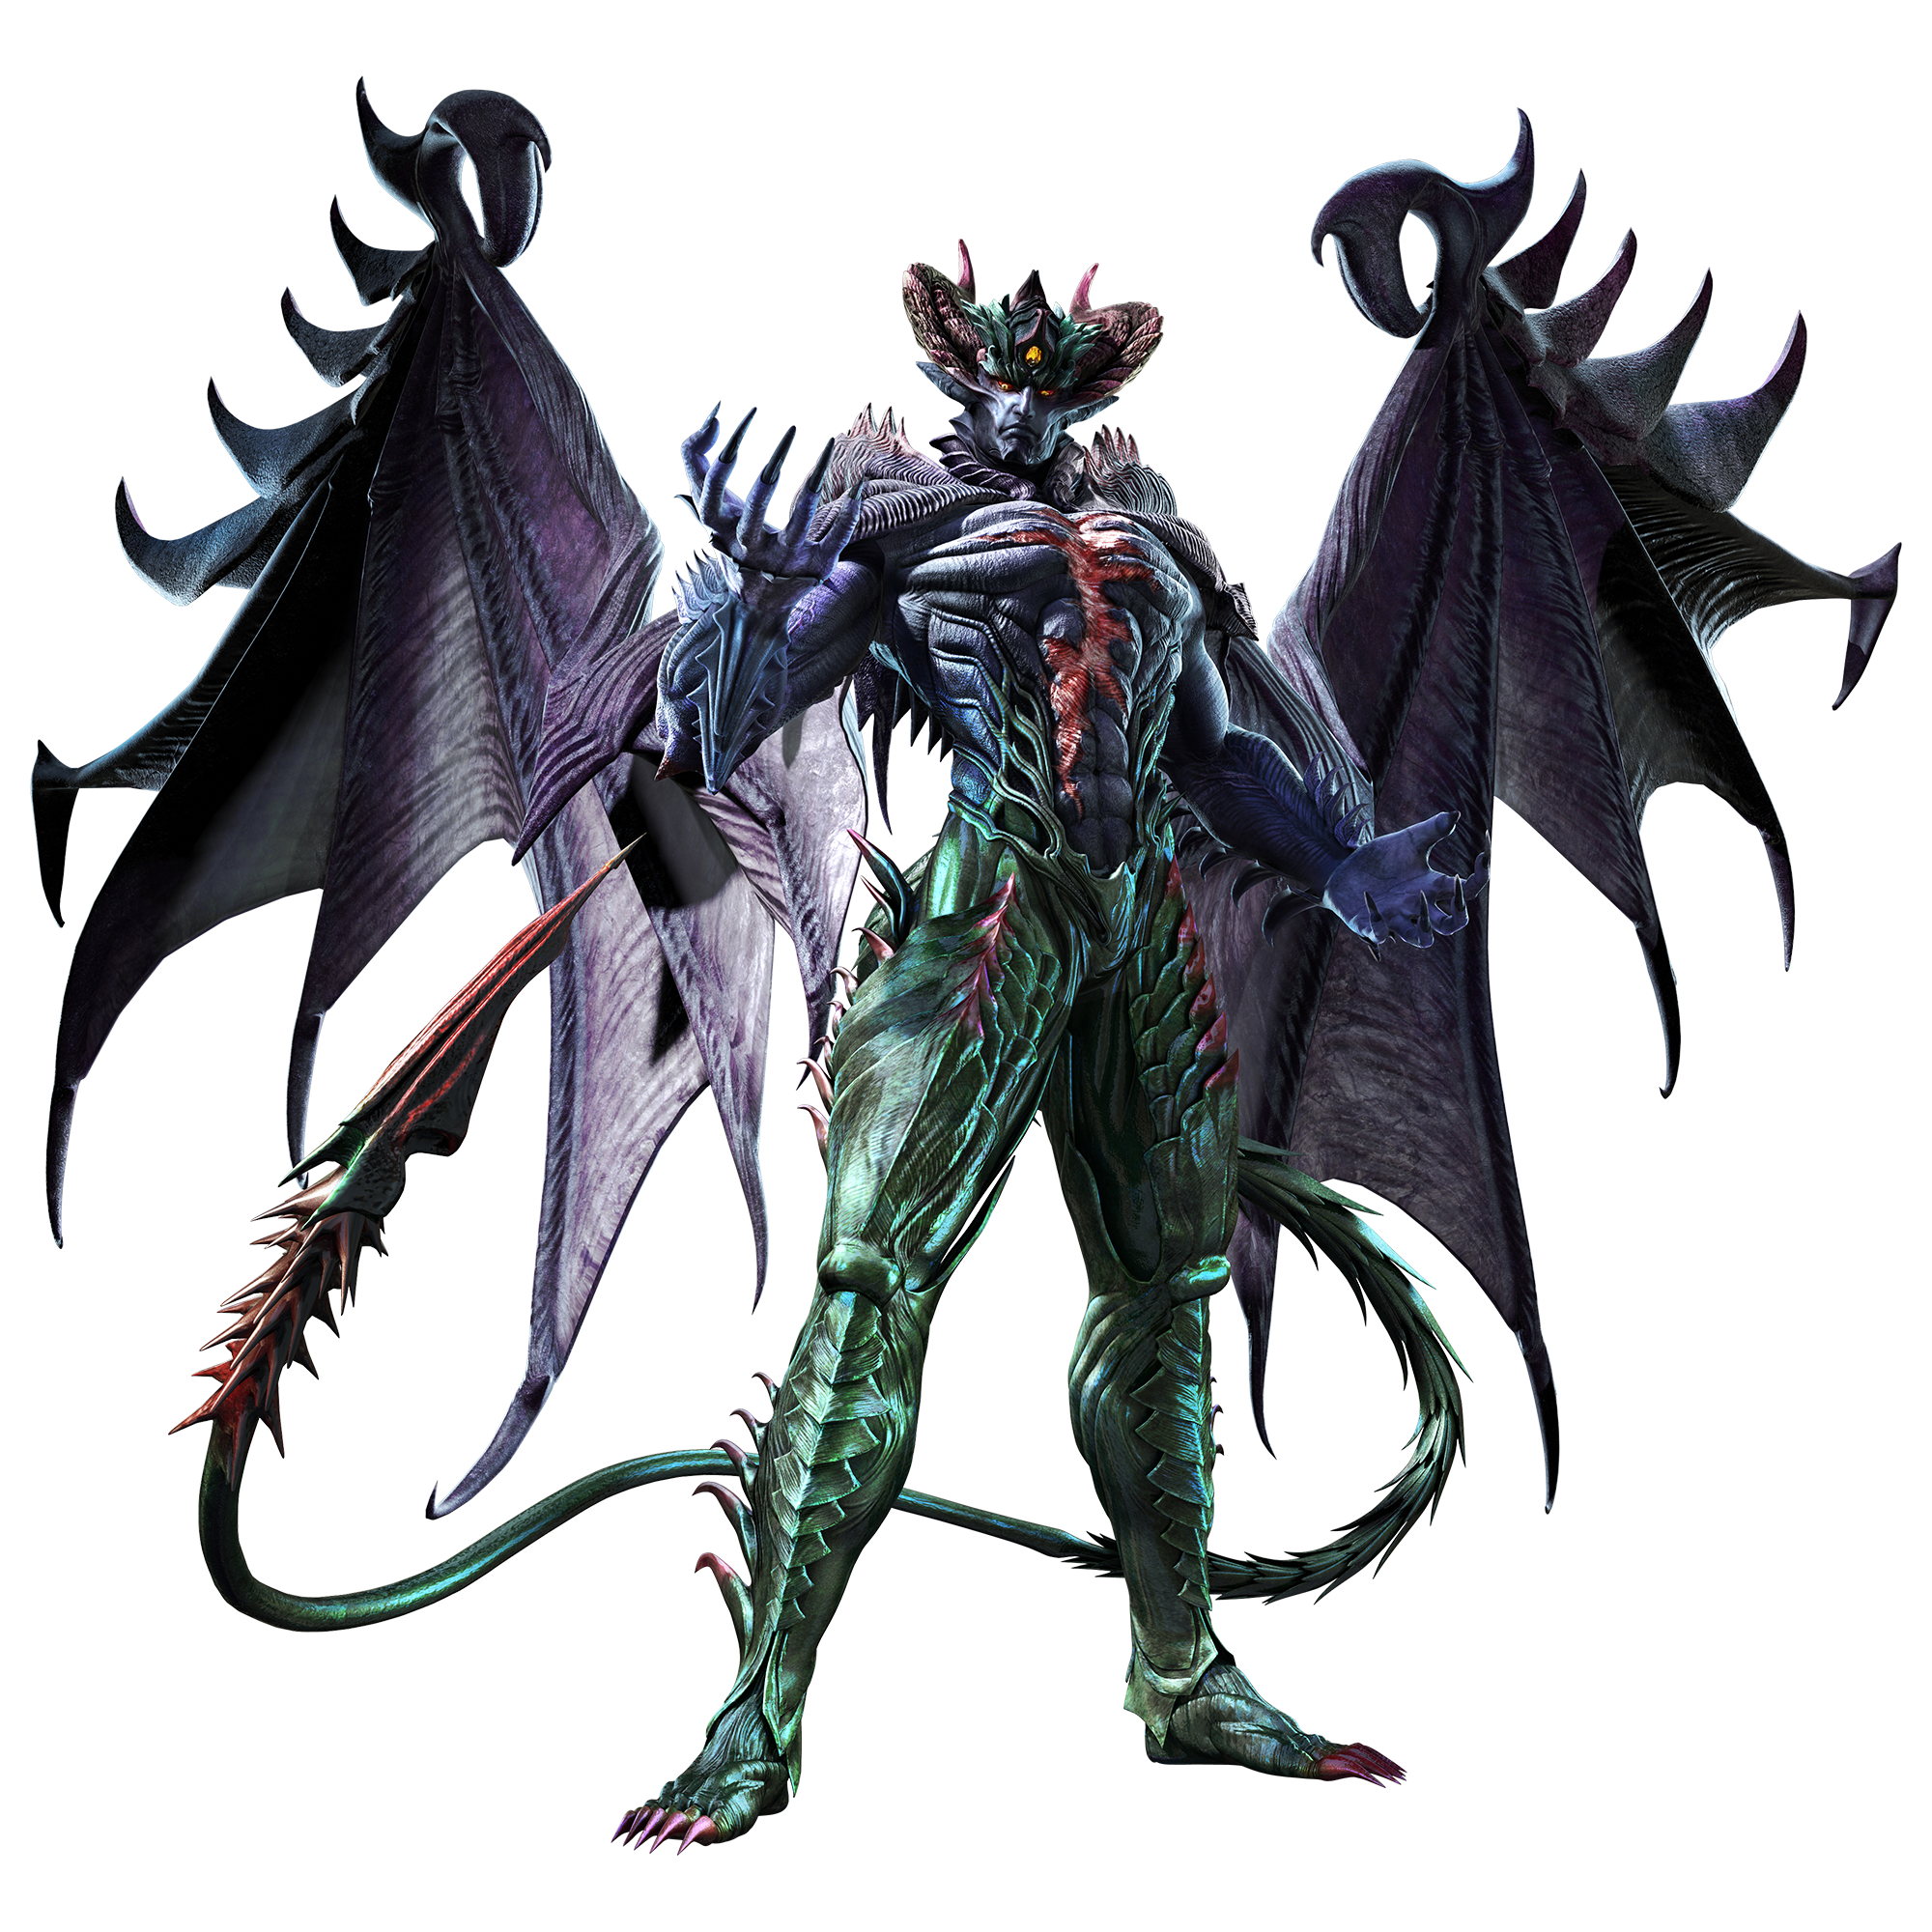 Devil Kazuya - Tekken Wiki - Neoseeker